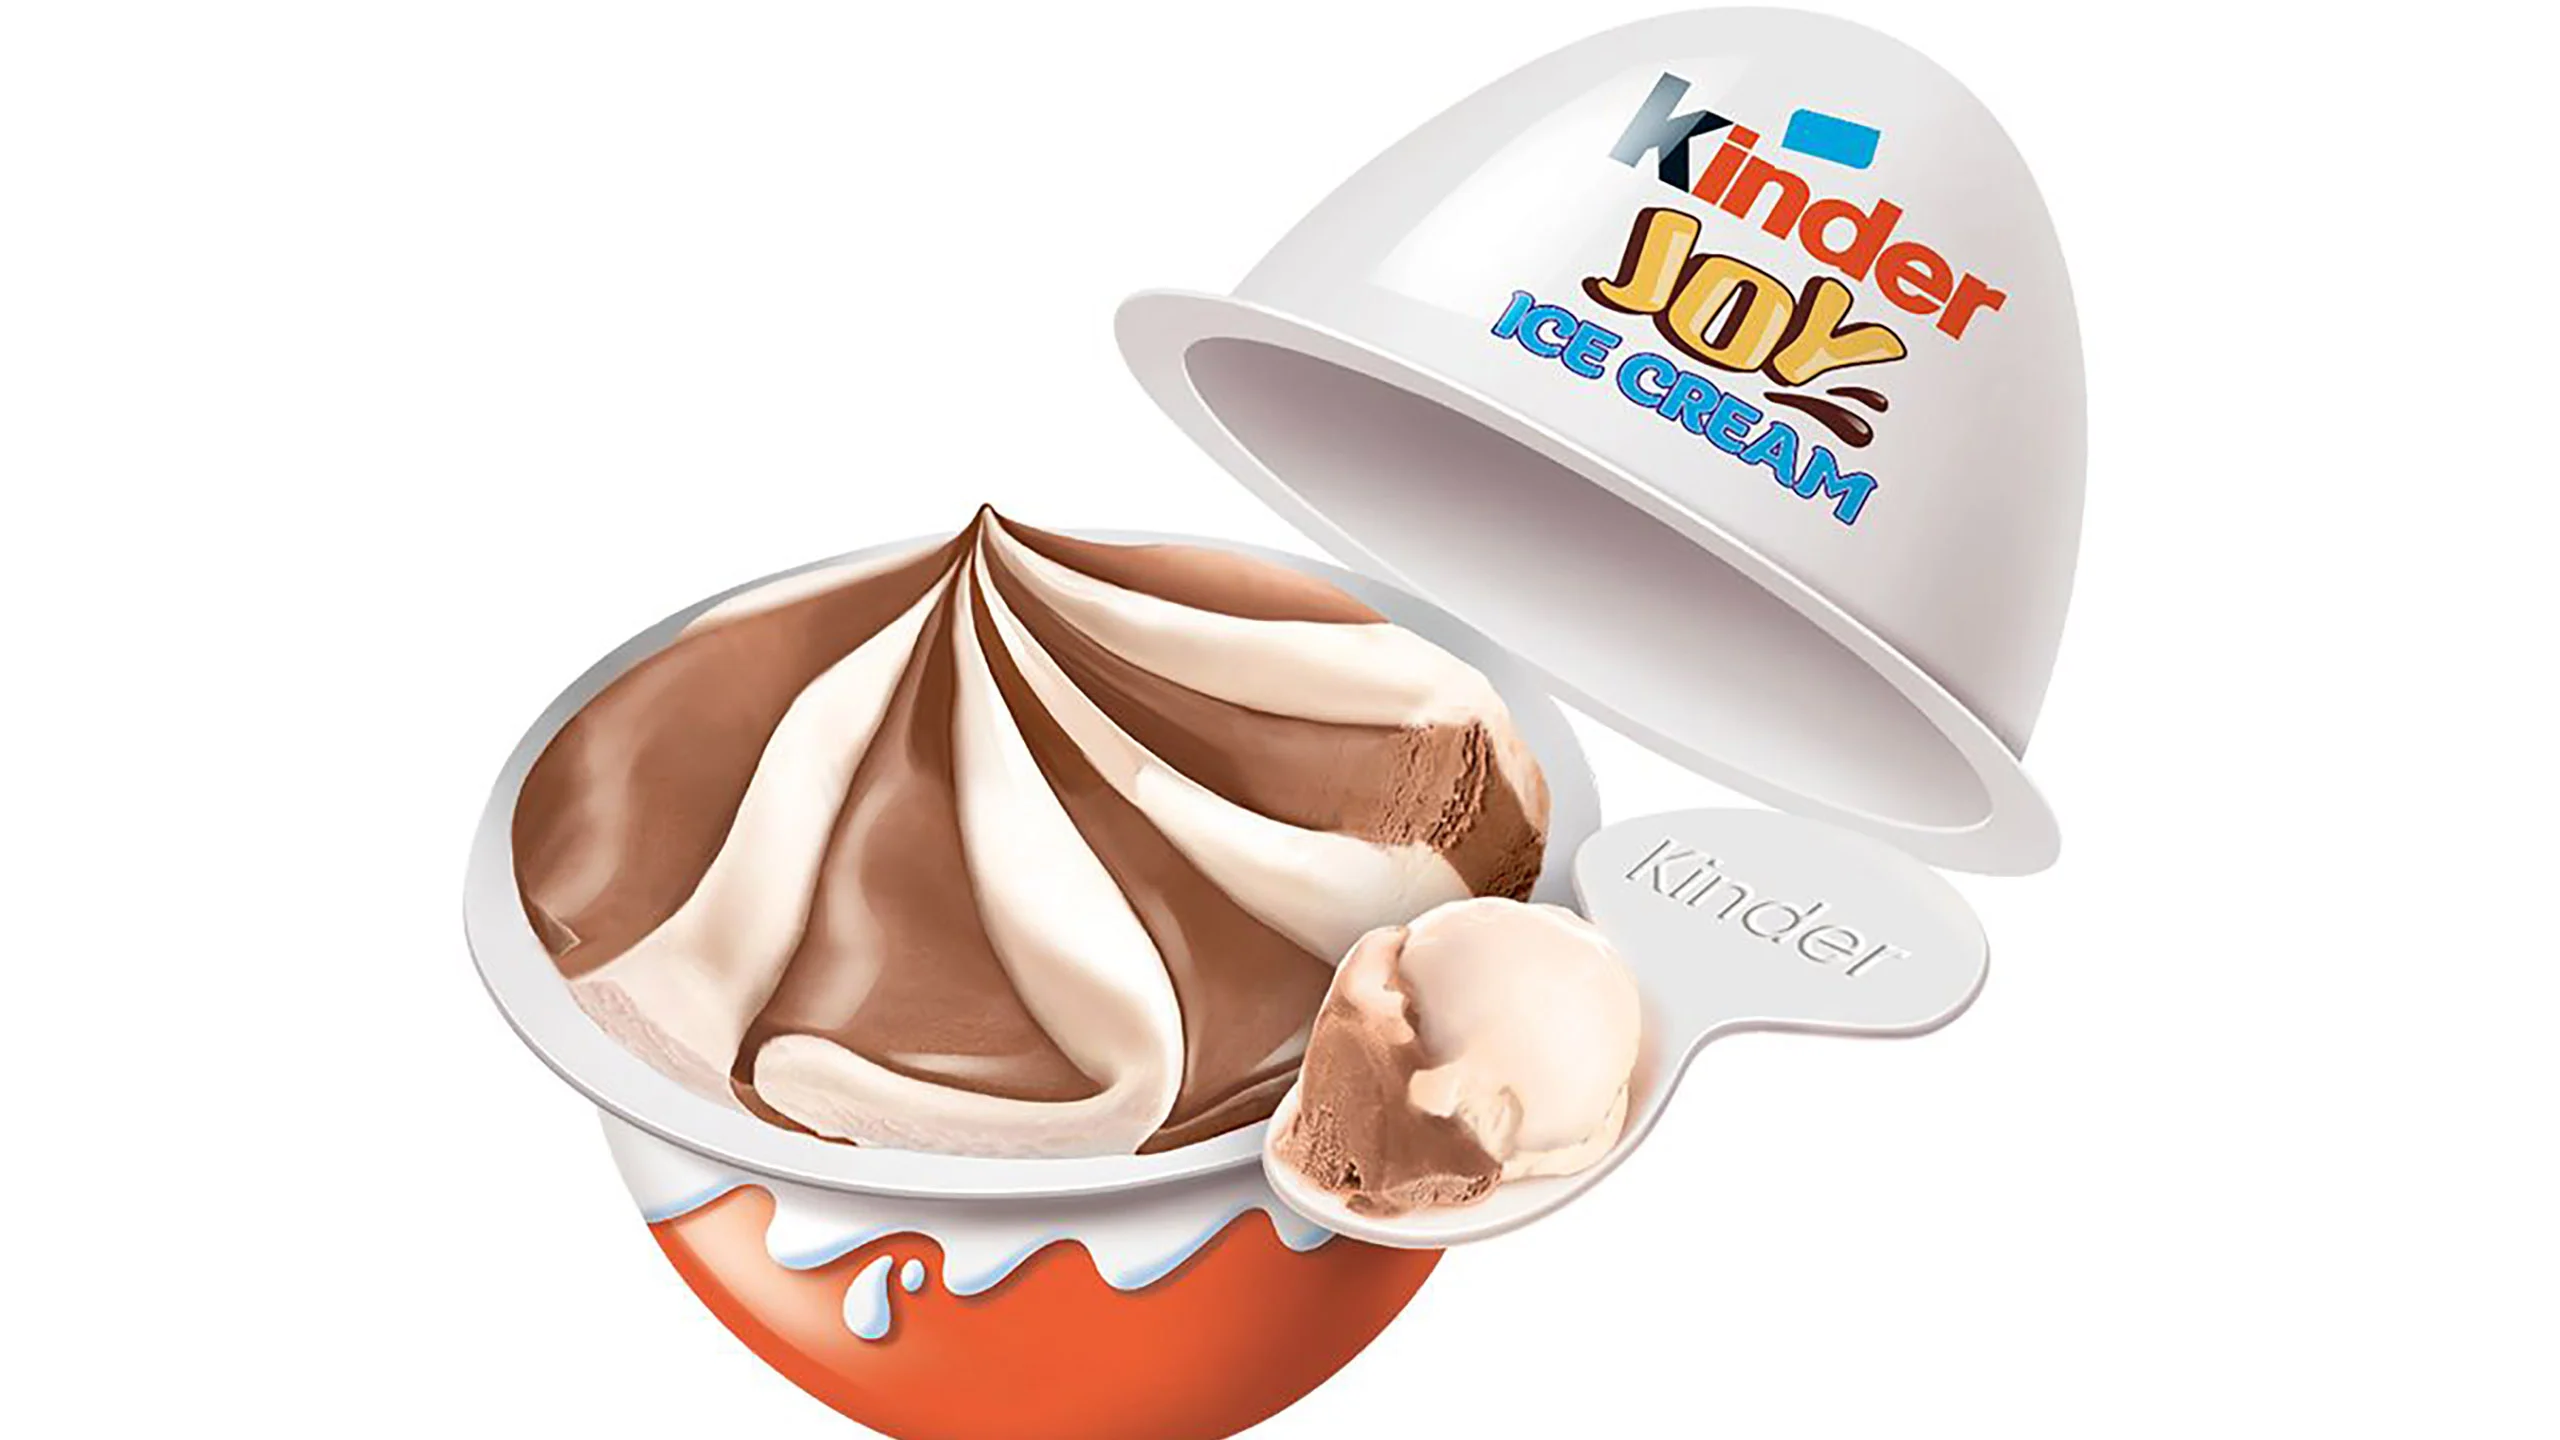 La marca de chocolates Kinder lanzará cuatro presentaciones de helado